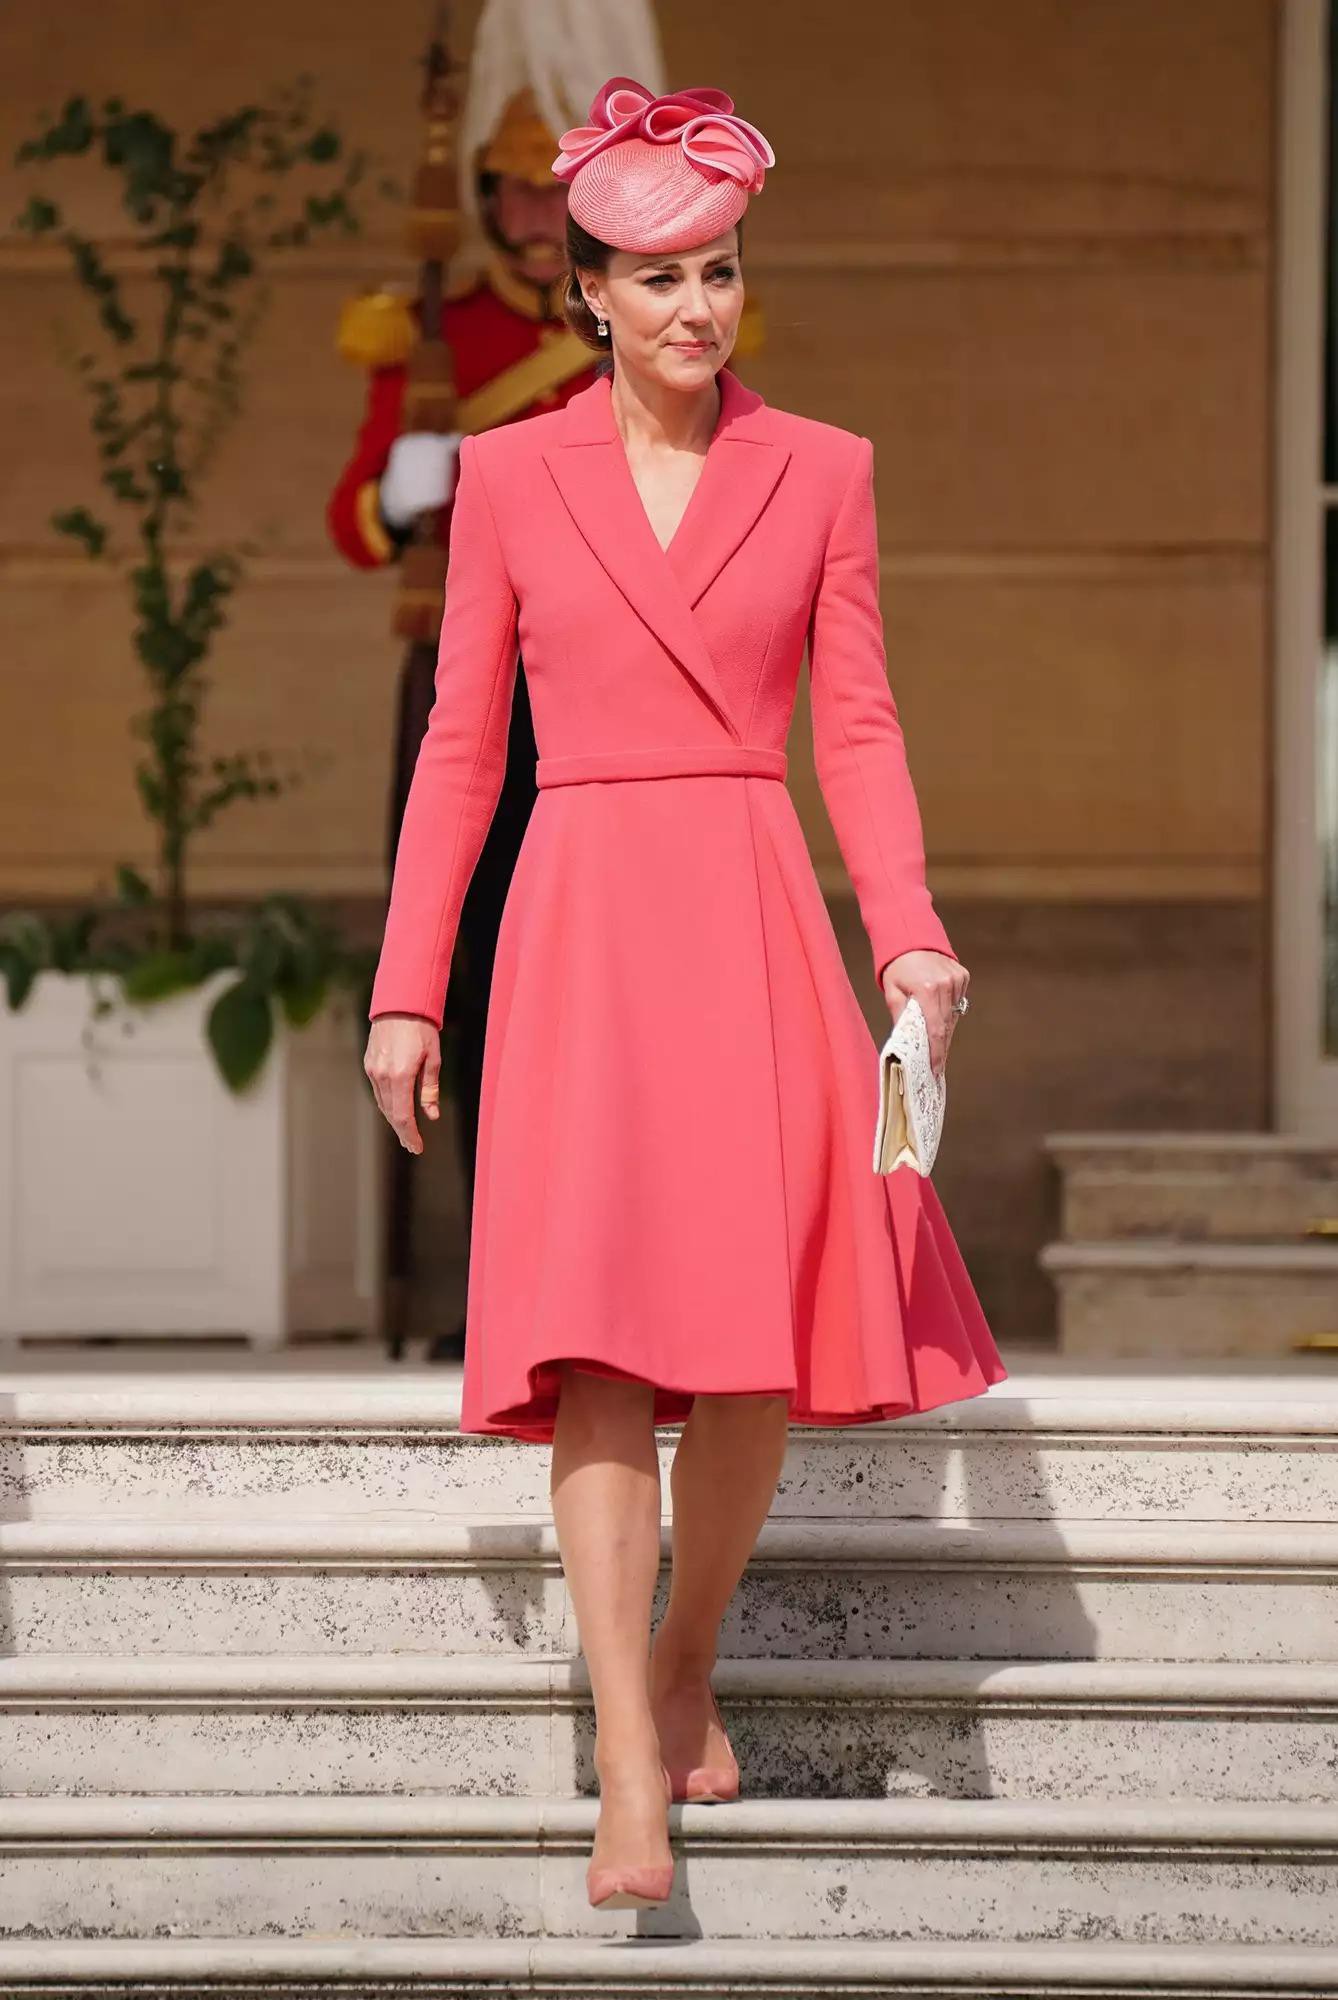 Ngắm những trang phục đẹp thanh lịch của 'Biểu tượng thời trang Hoàng gia' - Công nương Kate - Ảnh 7.